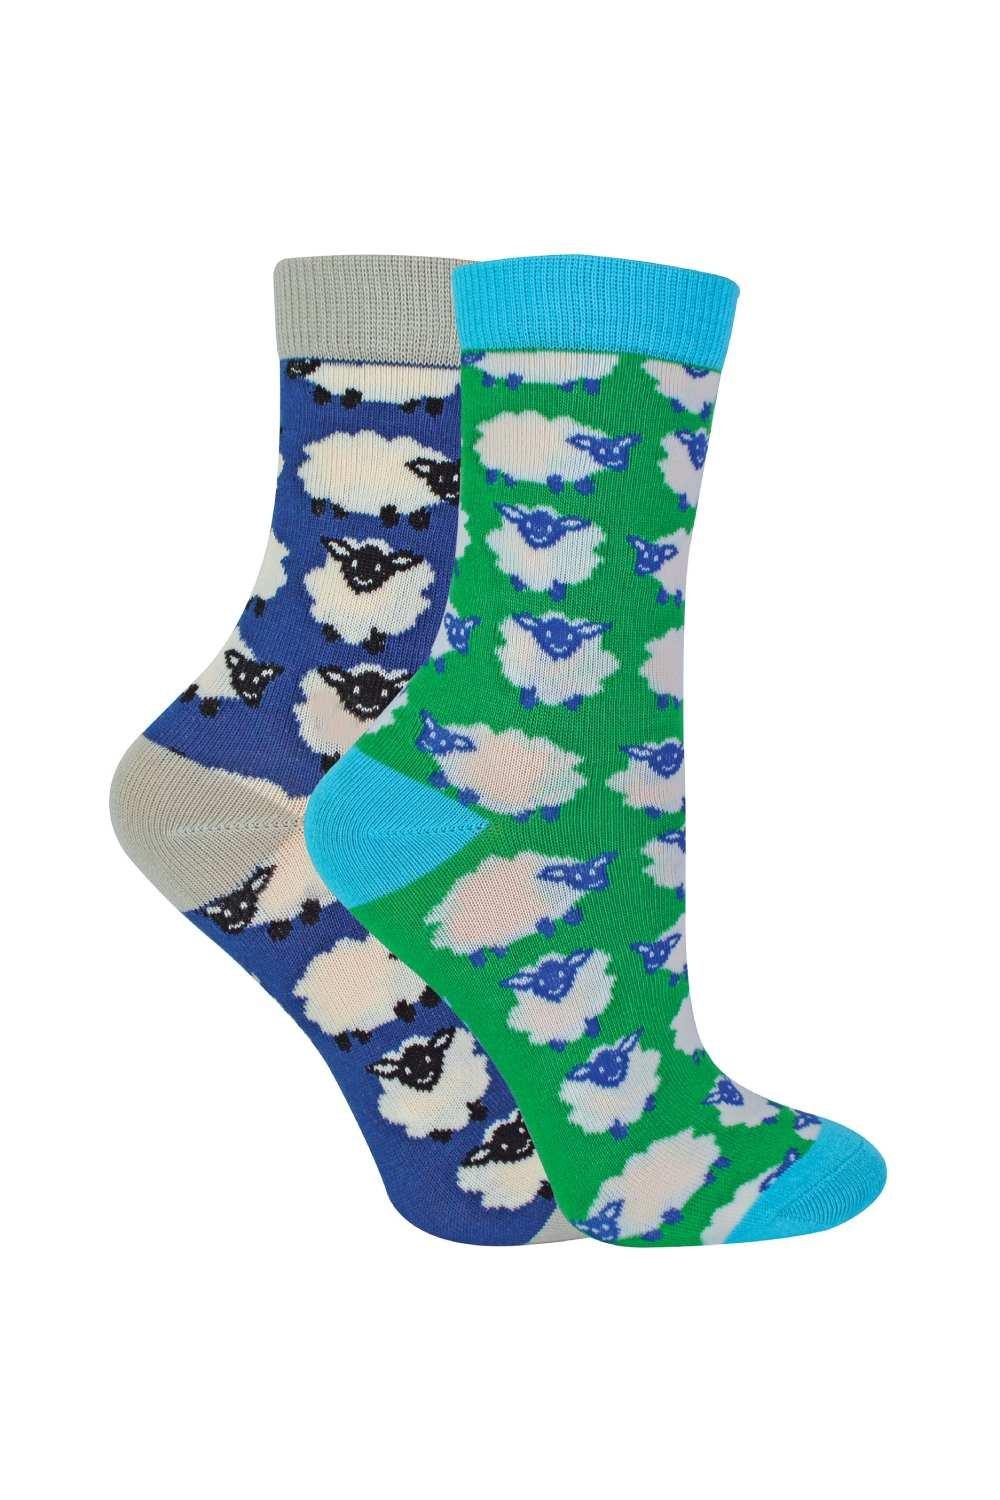 2 пары бамбуковых носков | Носки с рисунком, новинка, дизайн Miss Sparrow, синий